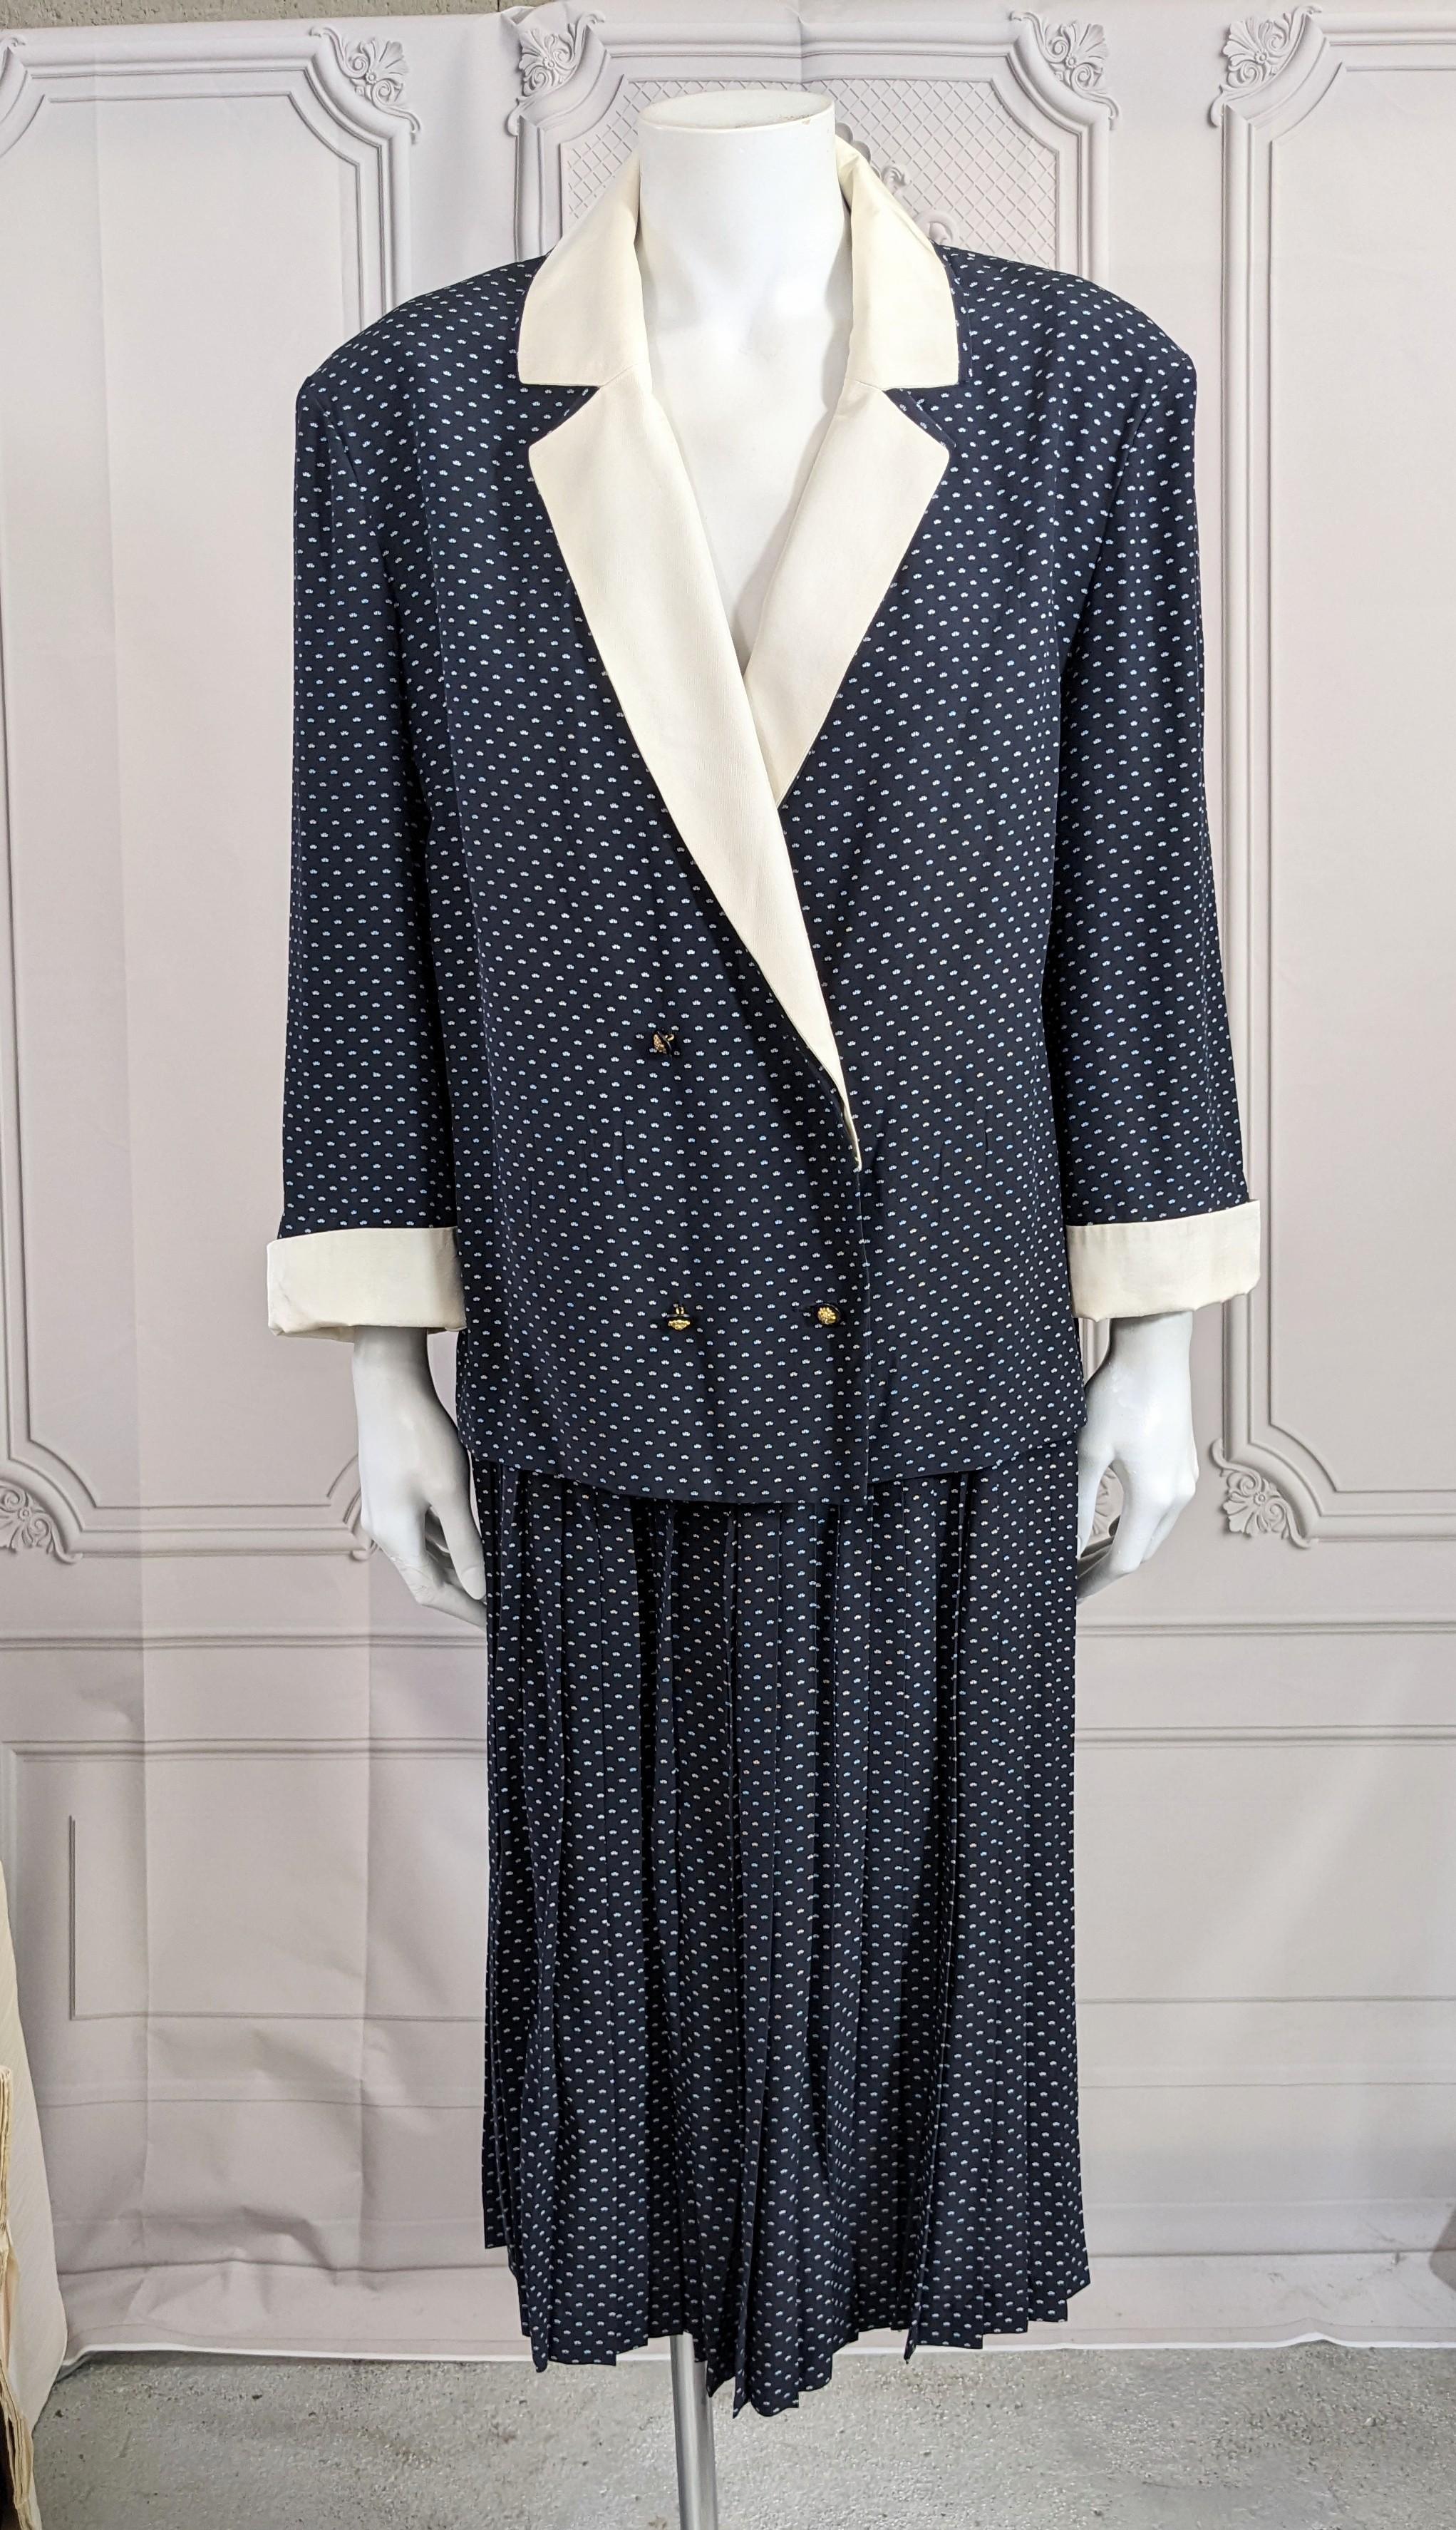 Klassischer und eleganter Chanel Navy Seidenkrepp Rock Anzug mit Messerfaltenrock aus den frühen 1980er Jahren. Unstrukturierter, kastenförmiger Blazer mit Schulterpads und 3/4-Ärmeln aus bedrucktem Seidenkrepp und weißem Seidenköper, der wie ein